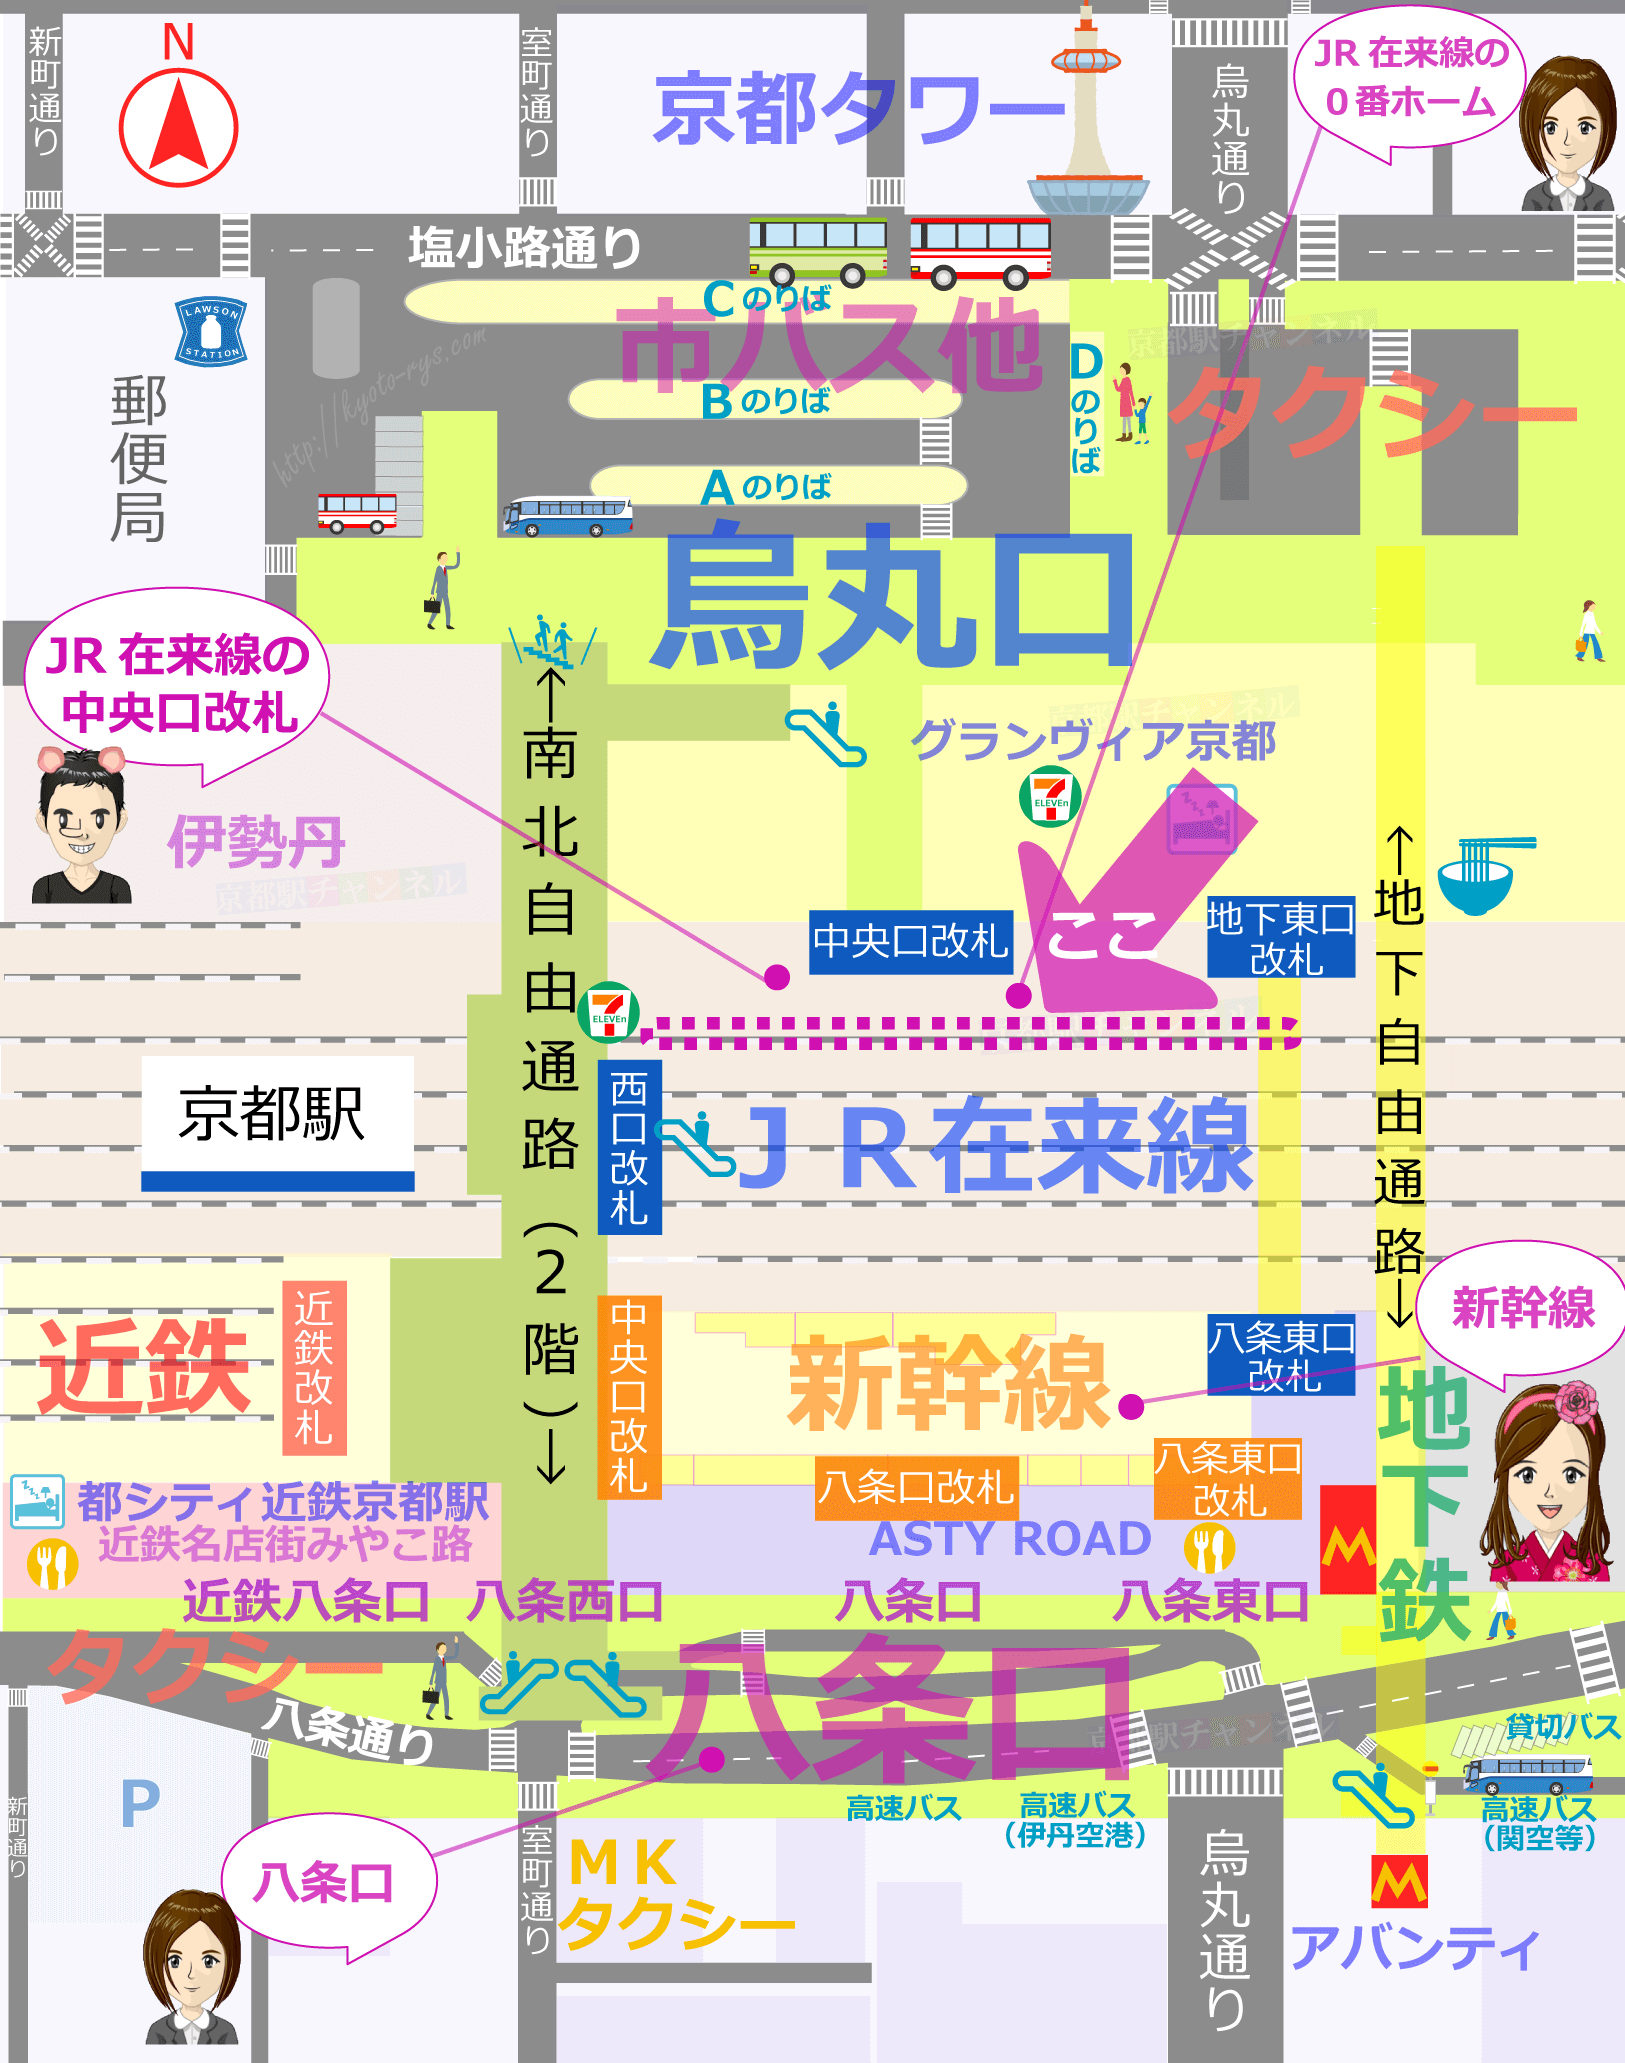 京都駅の全体図と0番線のマップ